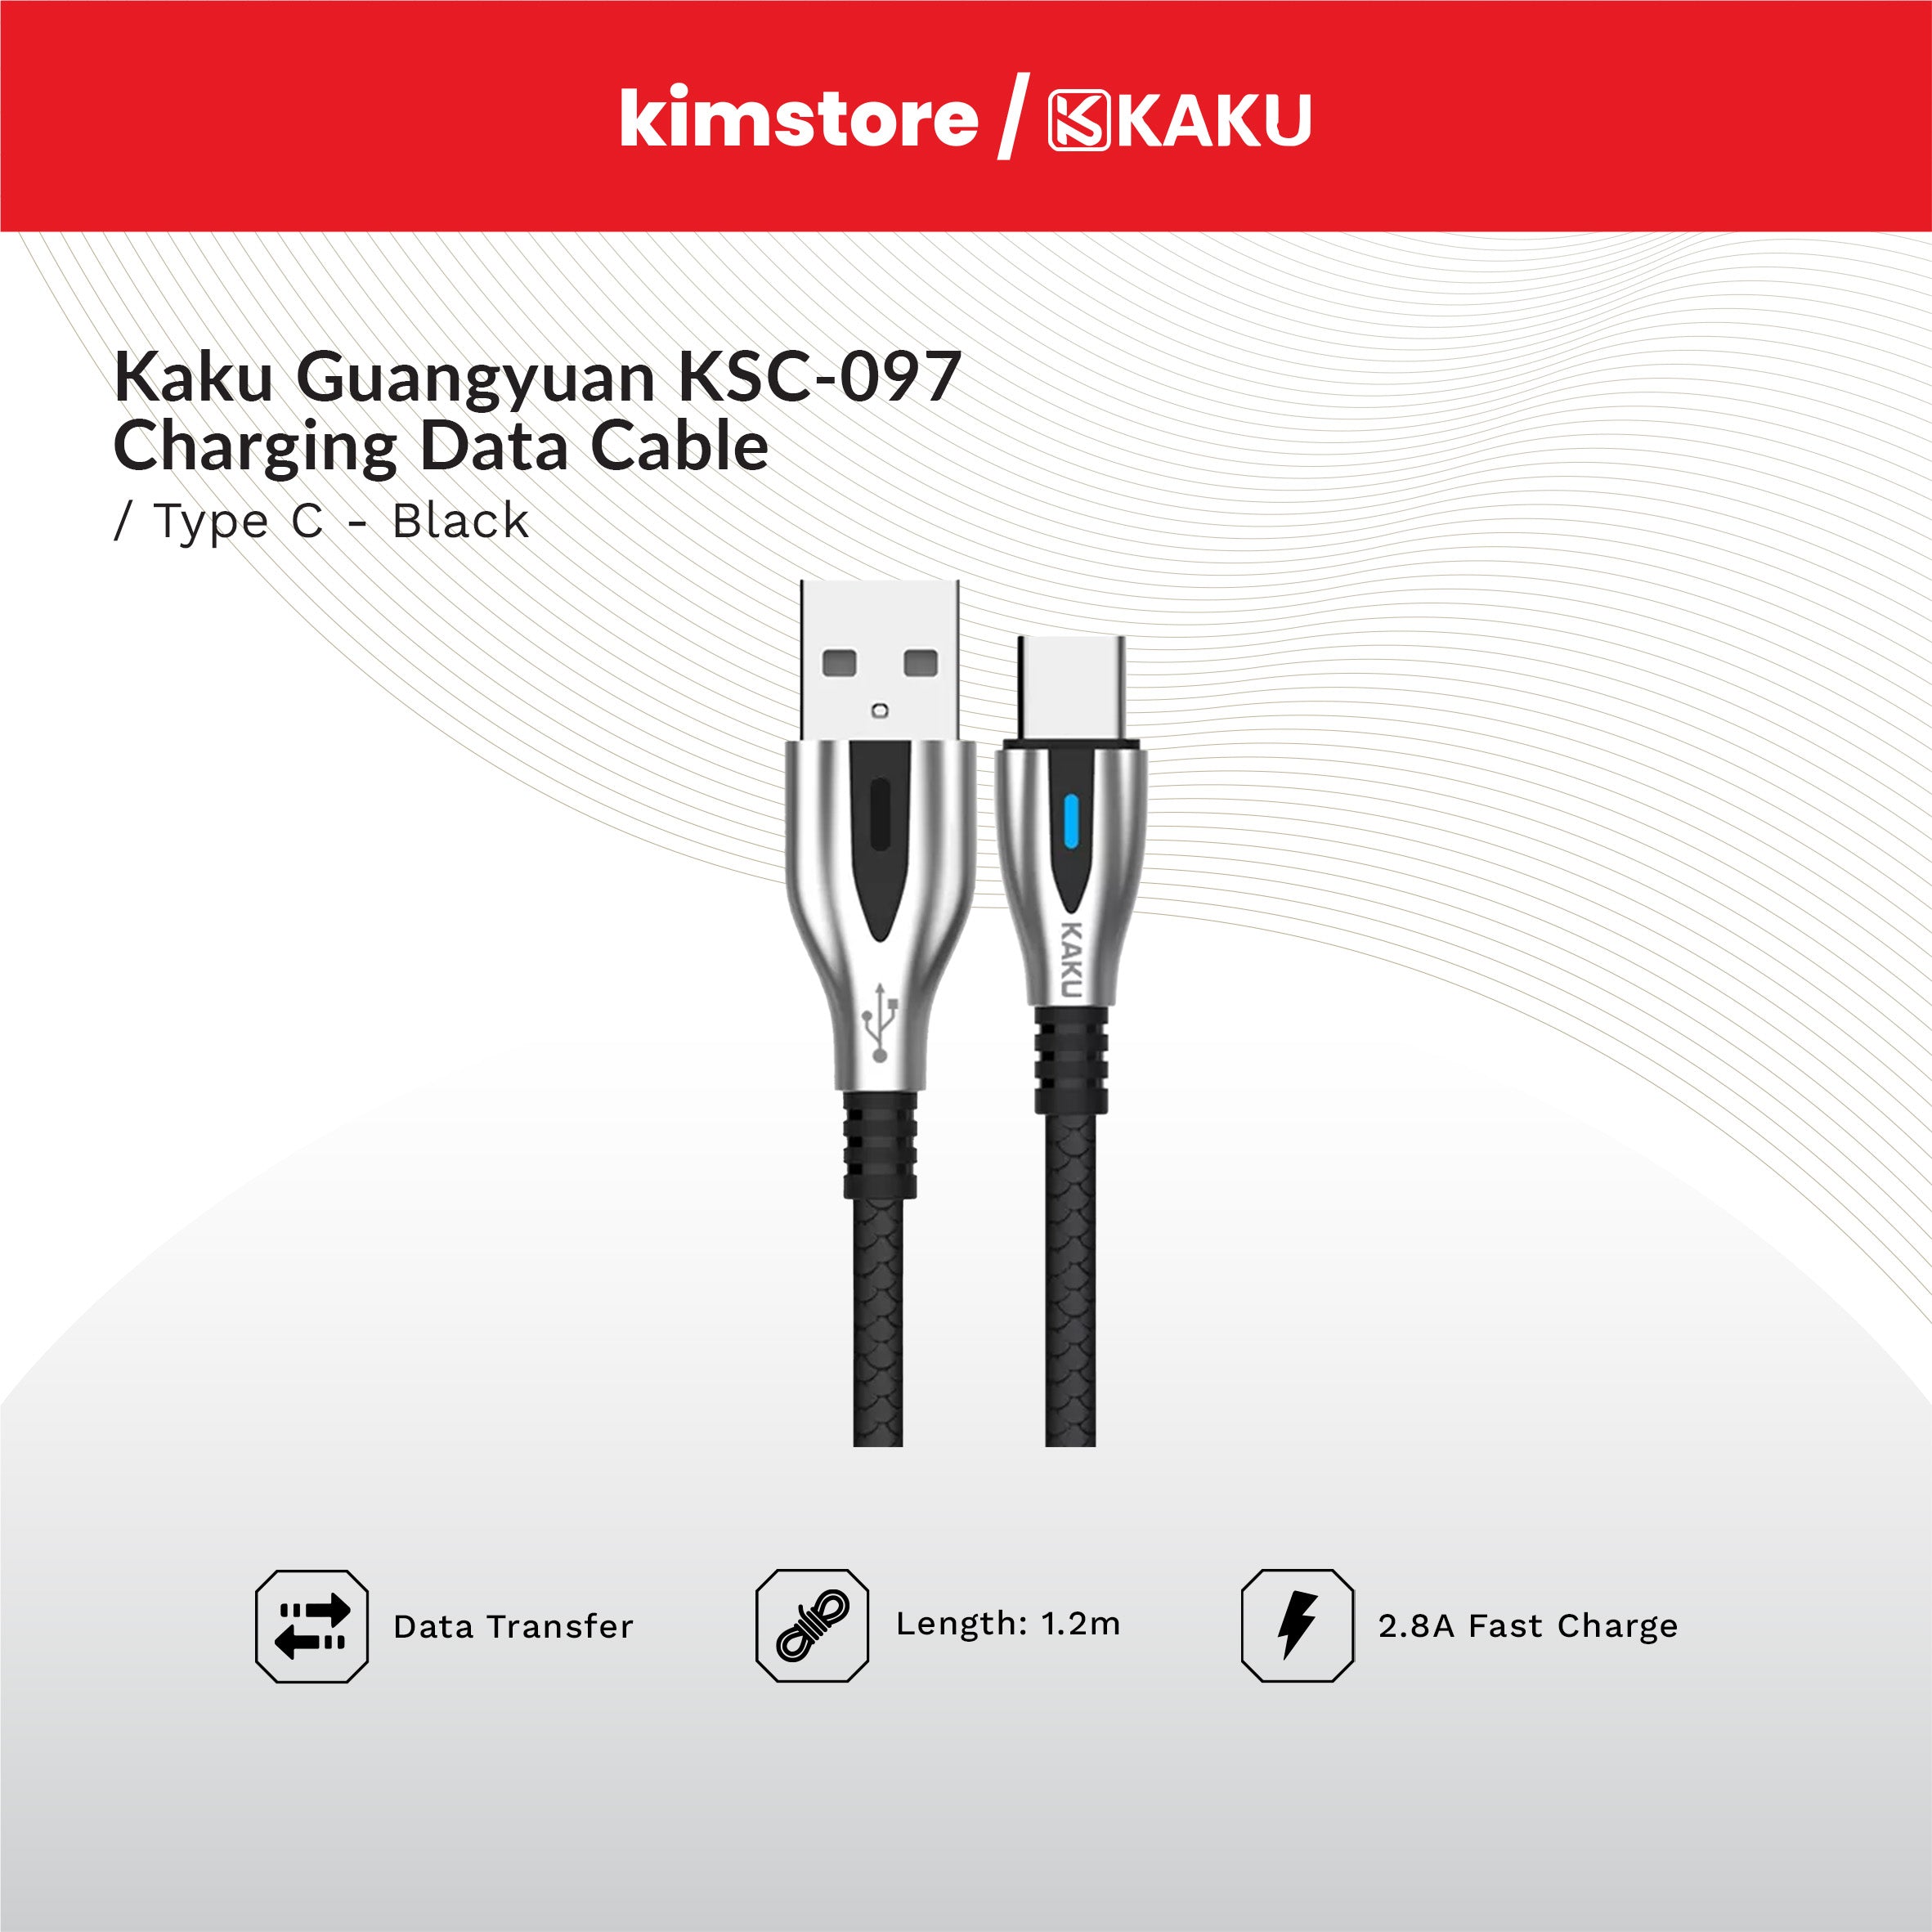 KAKU GUANGYUAN KSC-097 USB-C Charging Data Cable